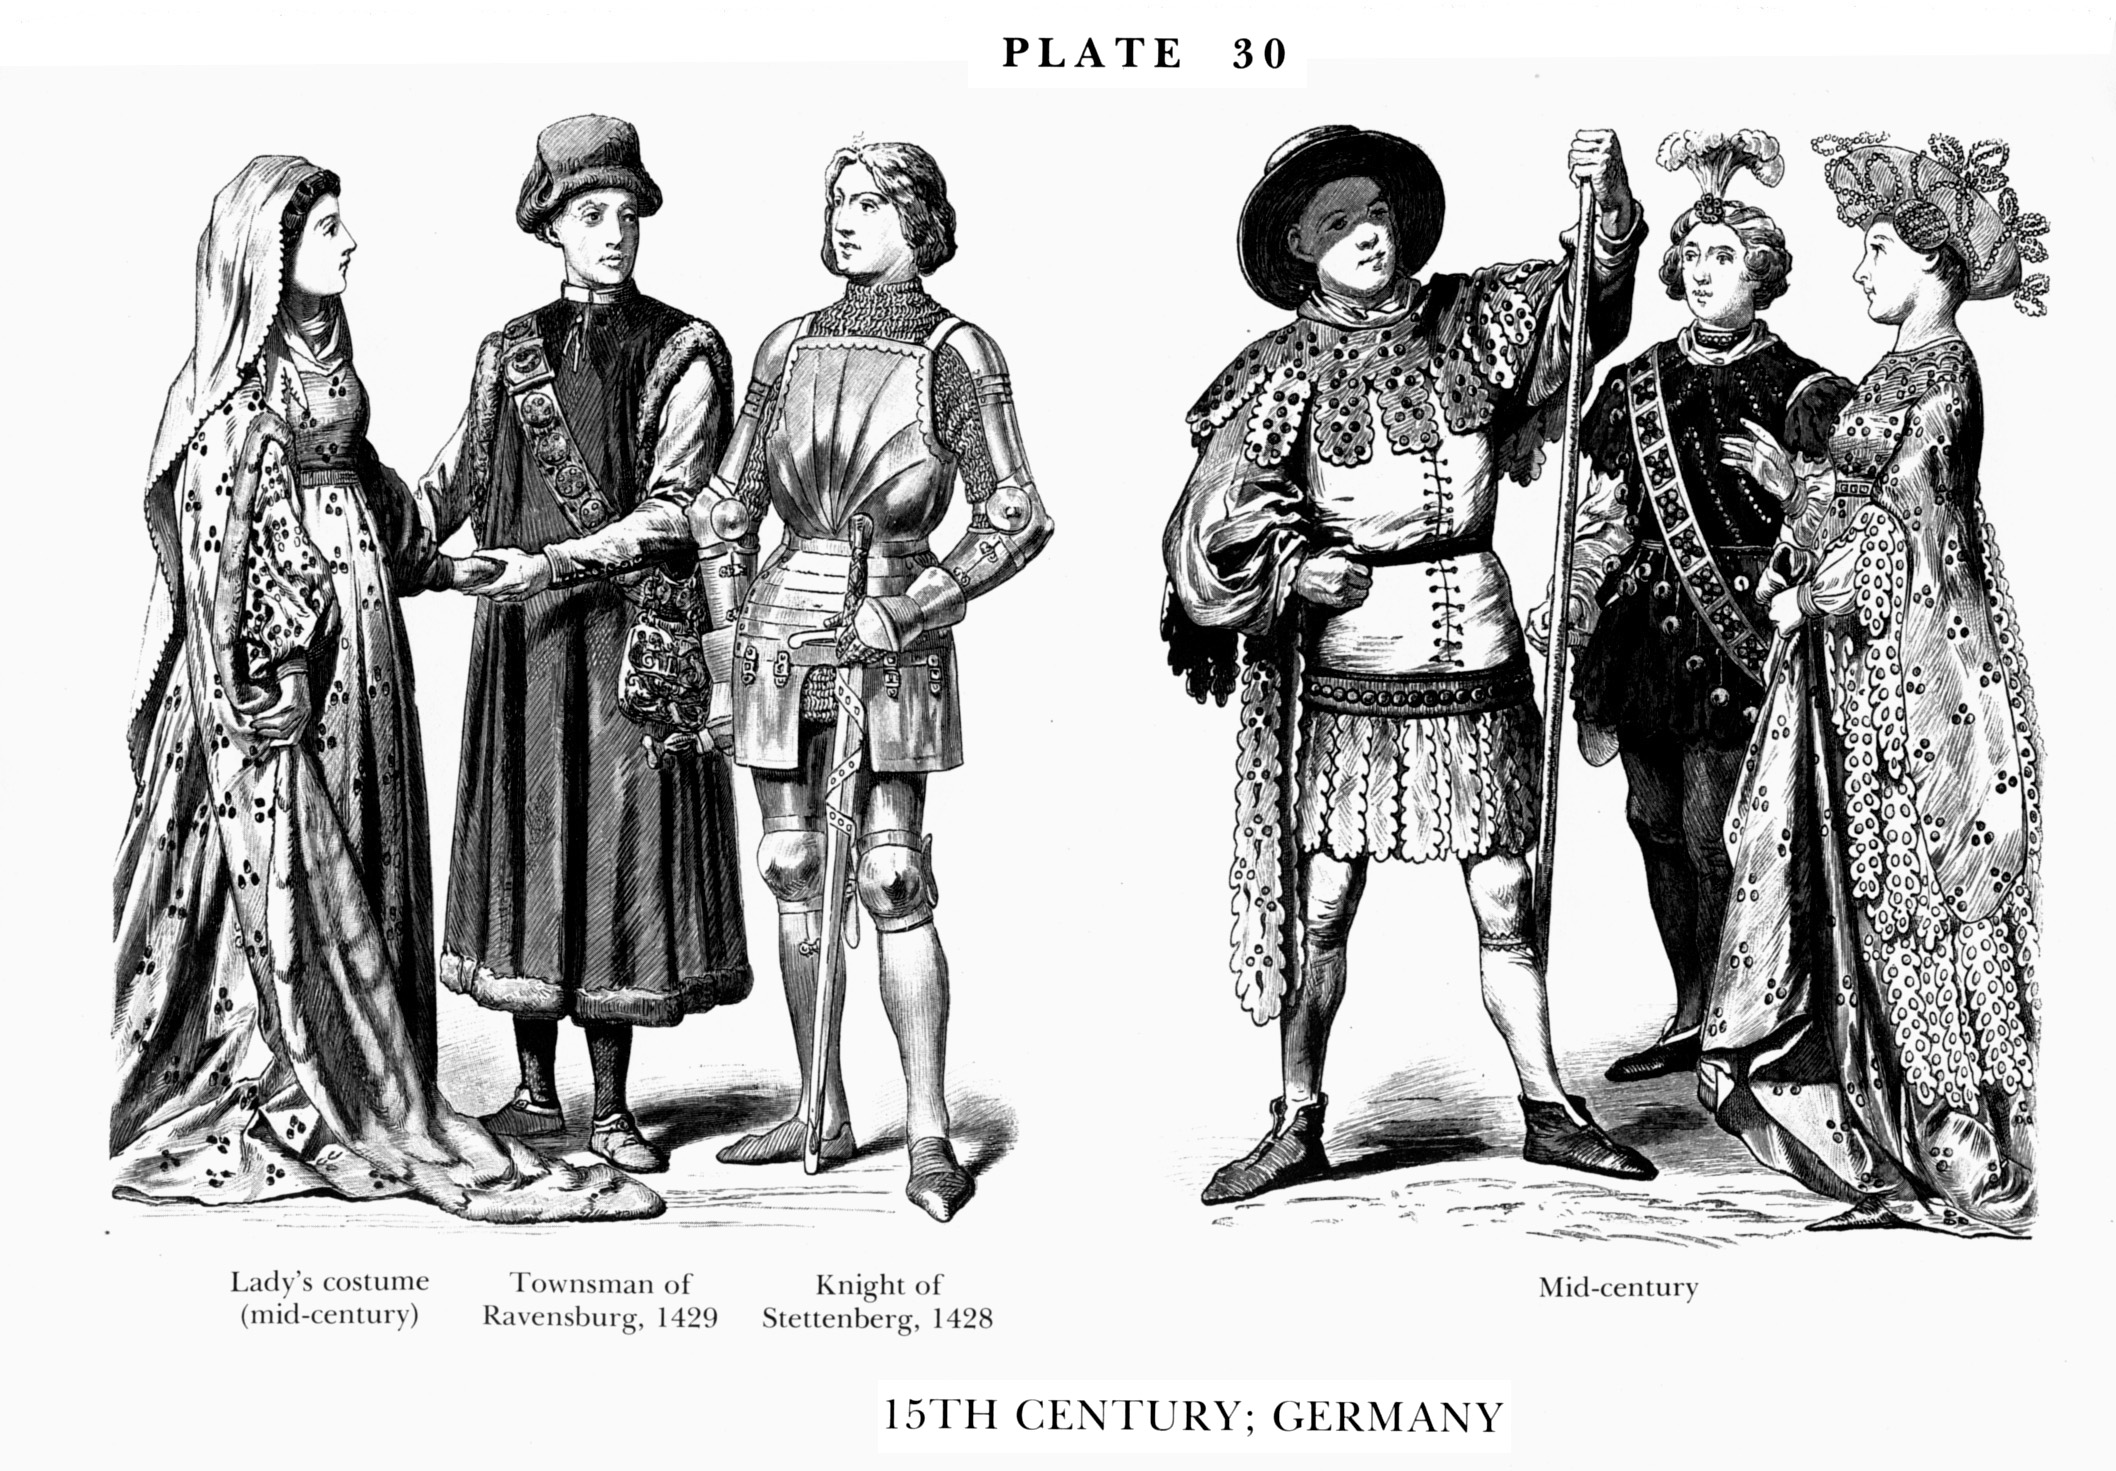 Германия в 14 веке. Германия одежда Ренессанс XVI века. Костюм Горожанина 16 века Германия. Германия 15 век одежда. Костюм Европа 16 век Германия горожане.